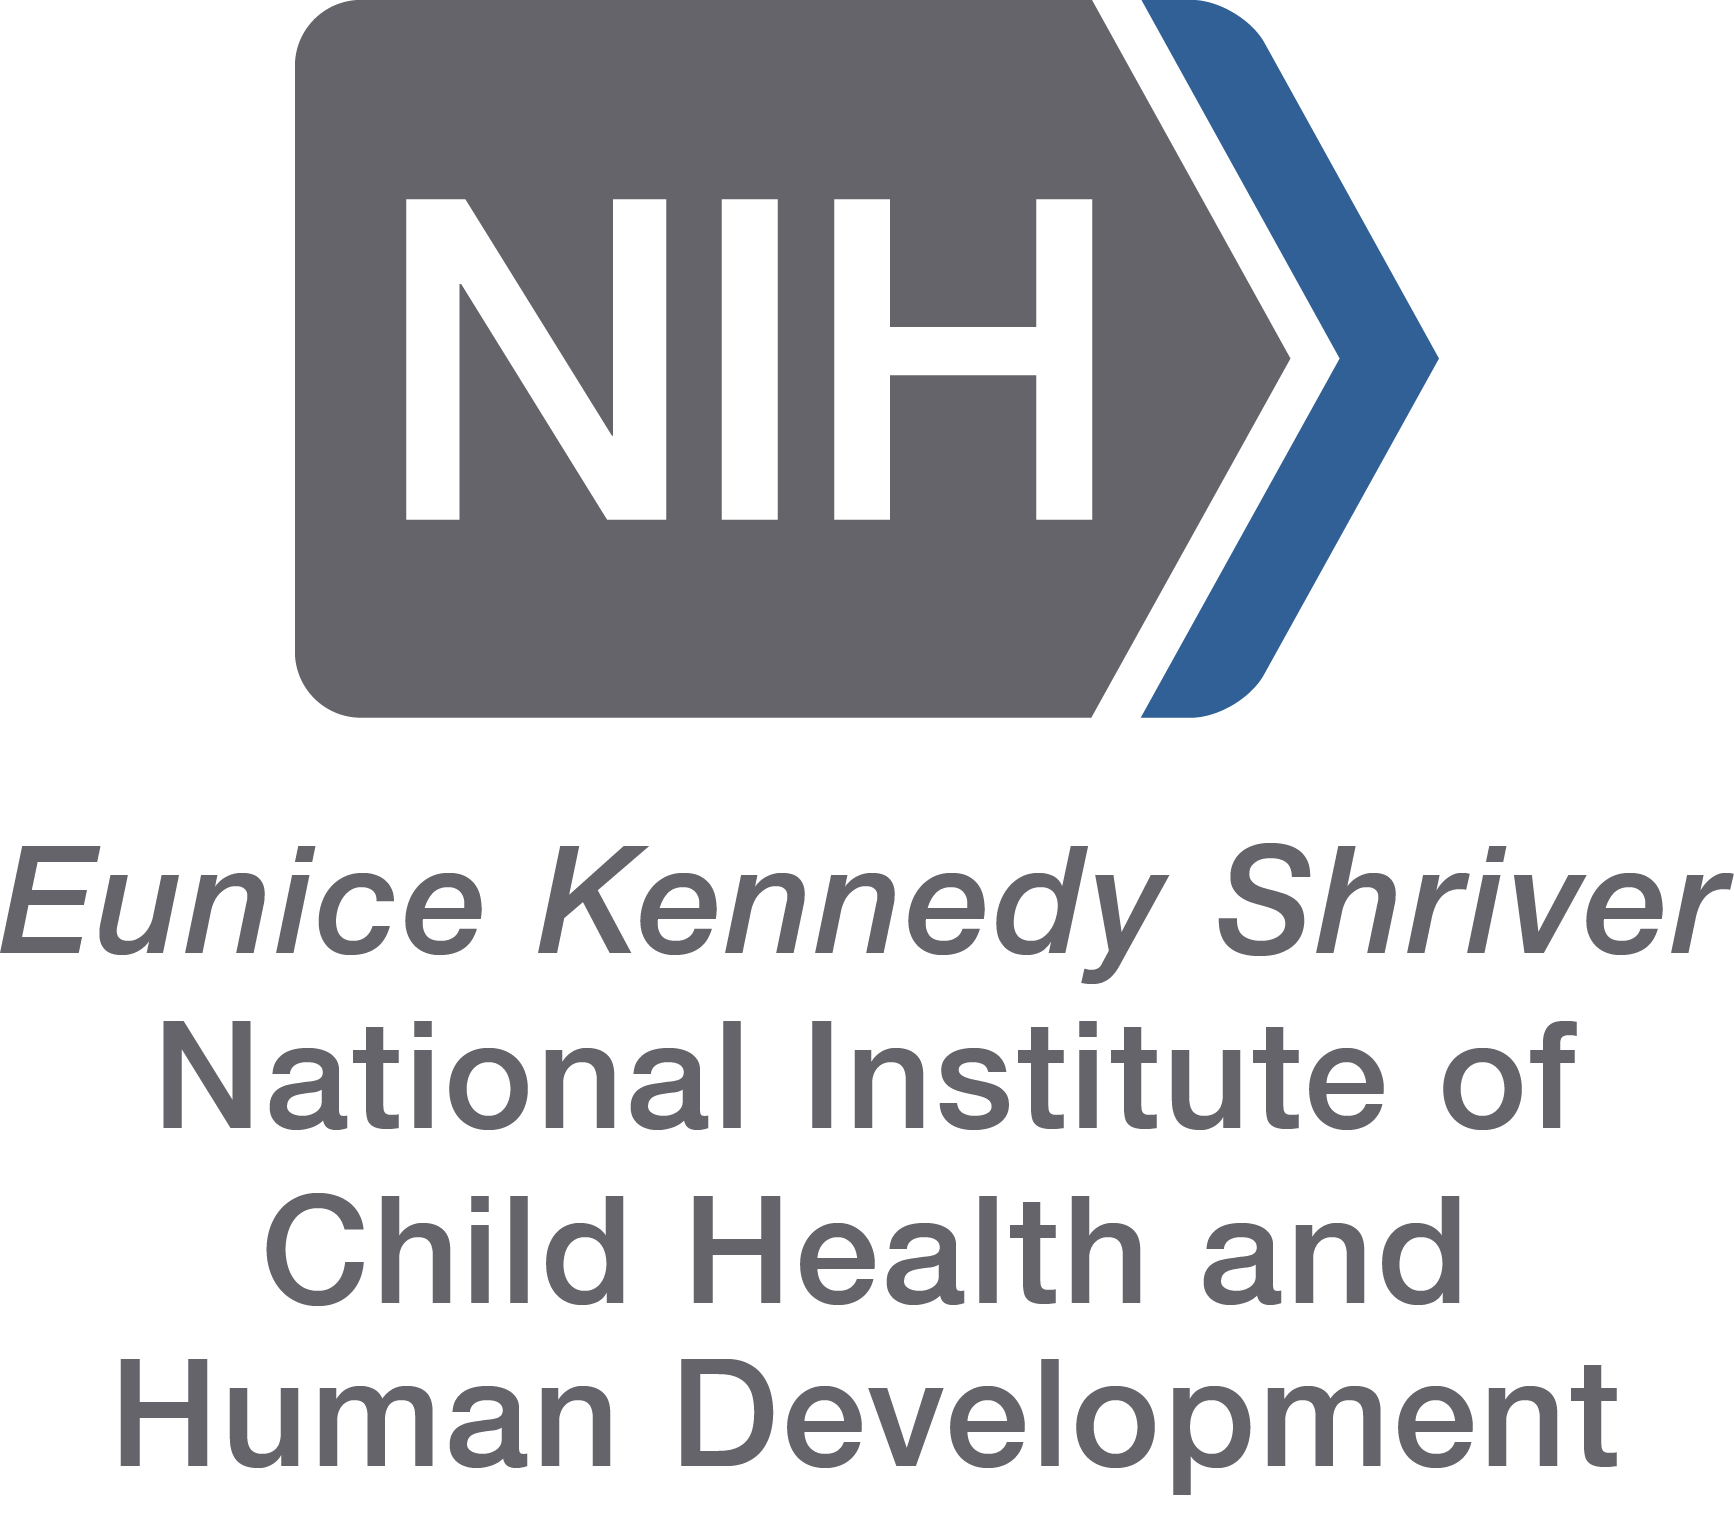 NIH Logo 